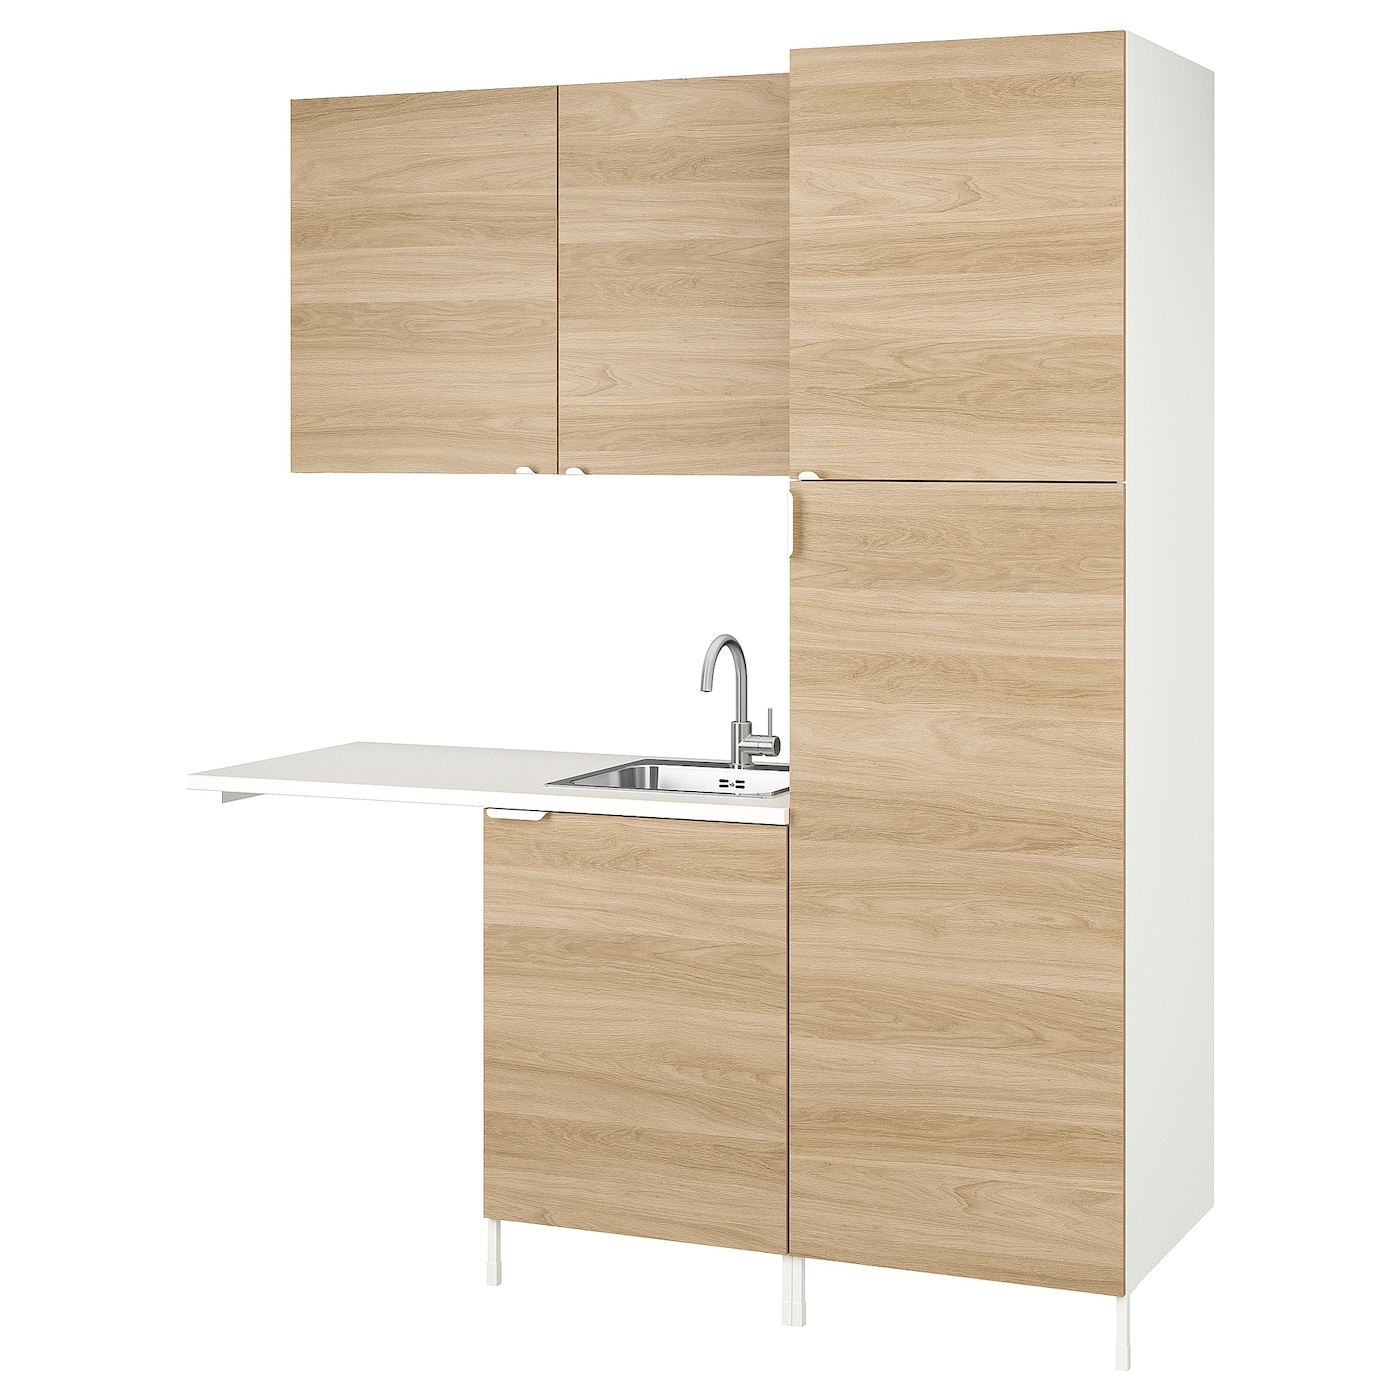 Комбинация для ванной - IKEA ENHET,  183x63.5x222.5 см, белый/имитация дуба, ЭНХЕТ ИКЕА